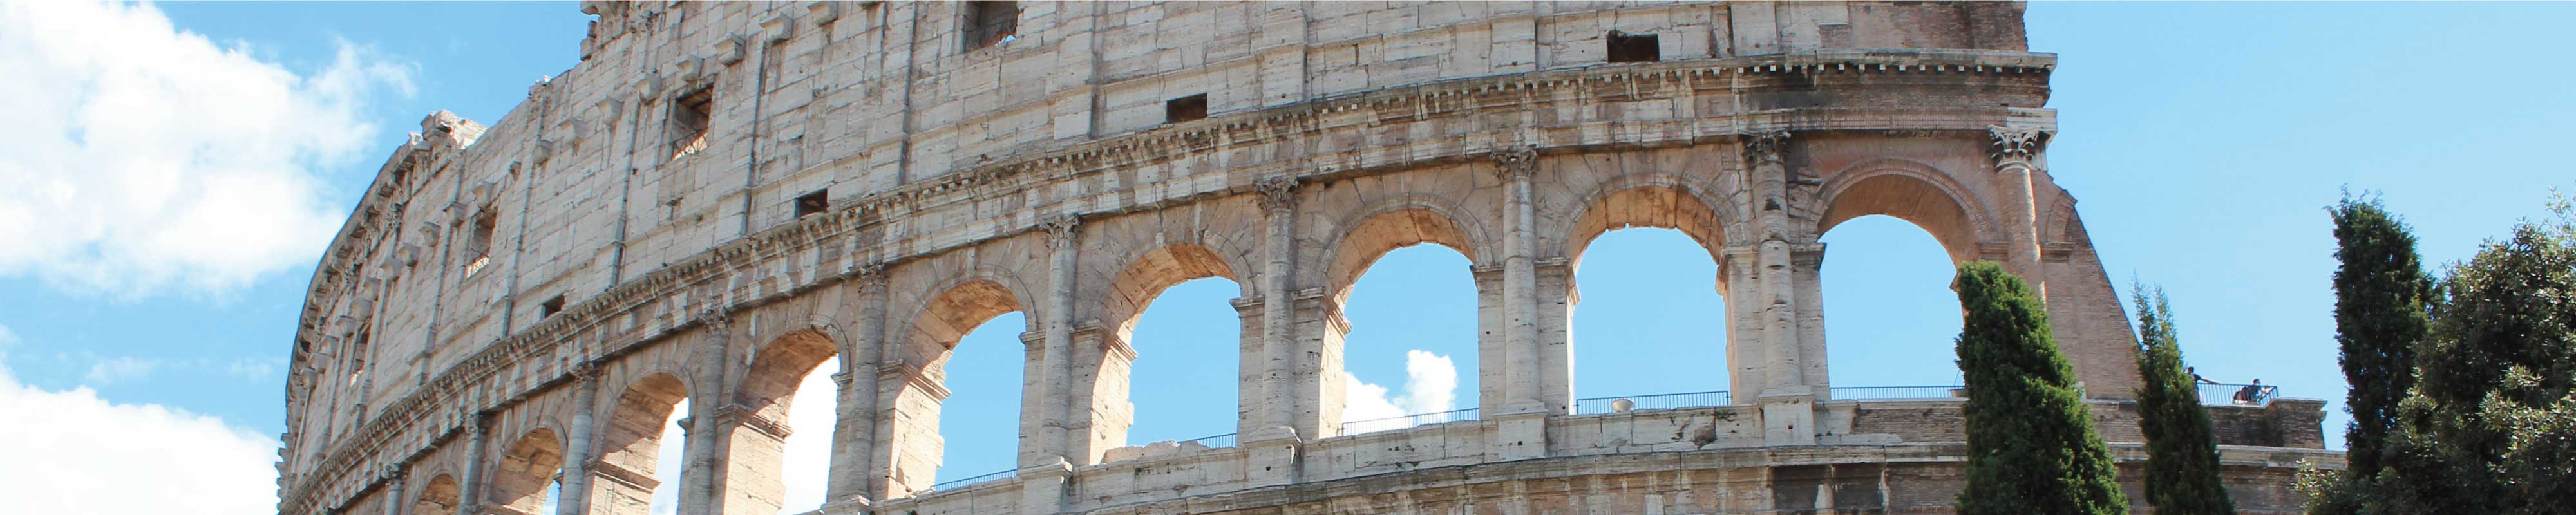 Deposito Bagagli | Colosseo a Roma - Nannybag